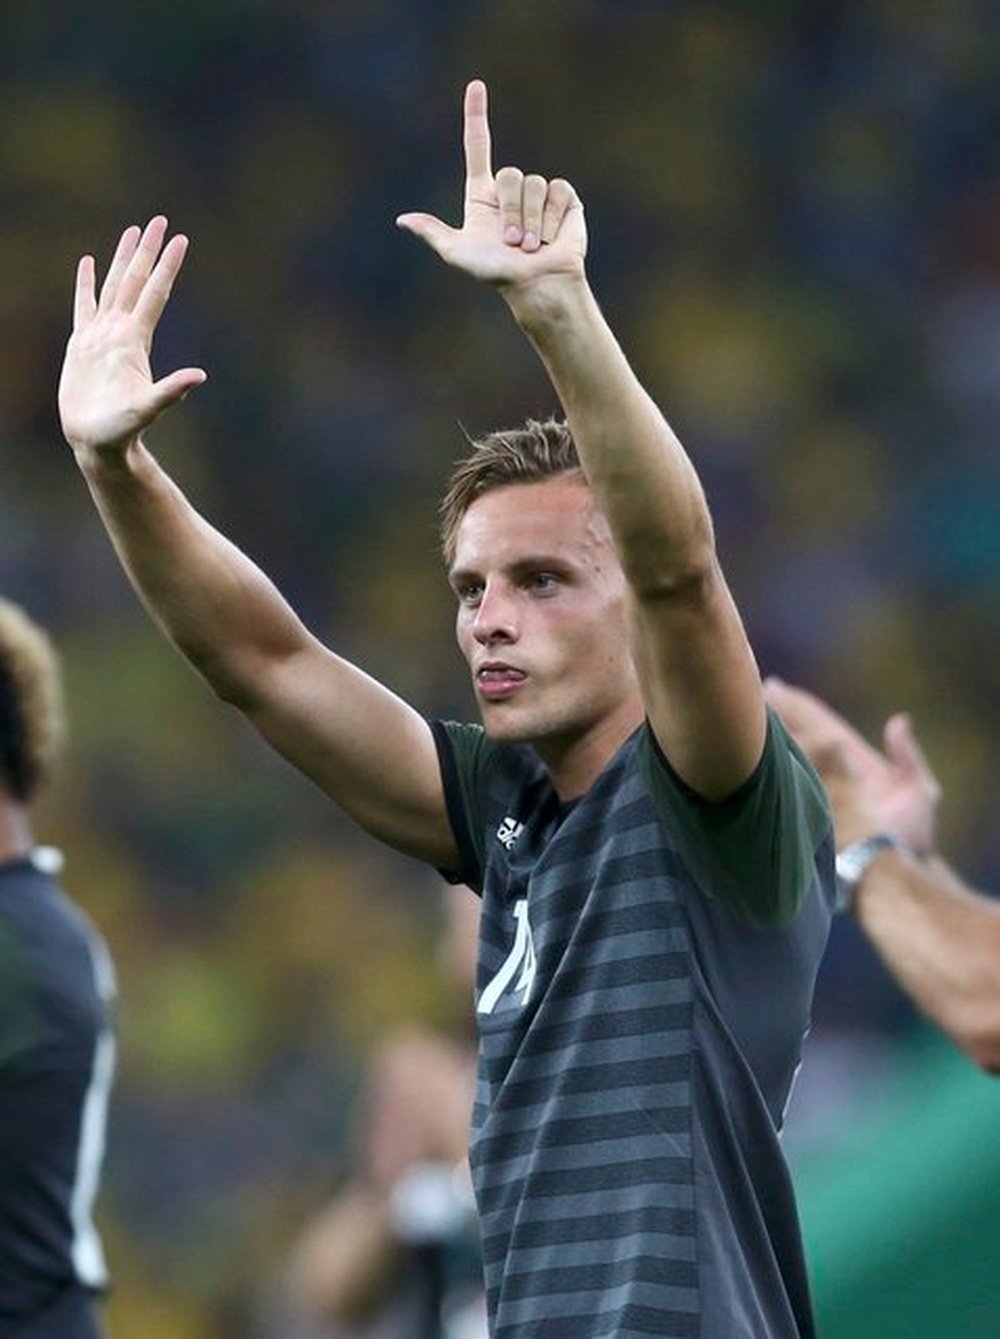 El jugador alemán provocó al público de Maracaná con un feo gesto. Twitter